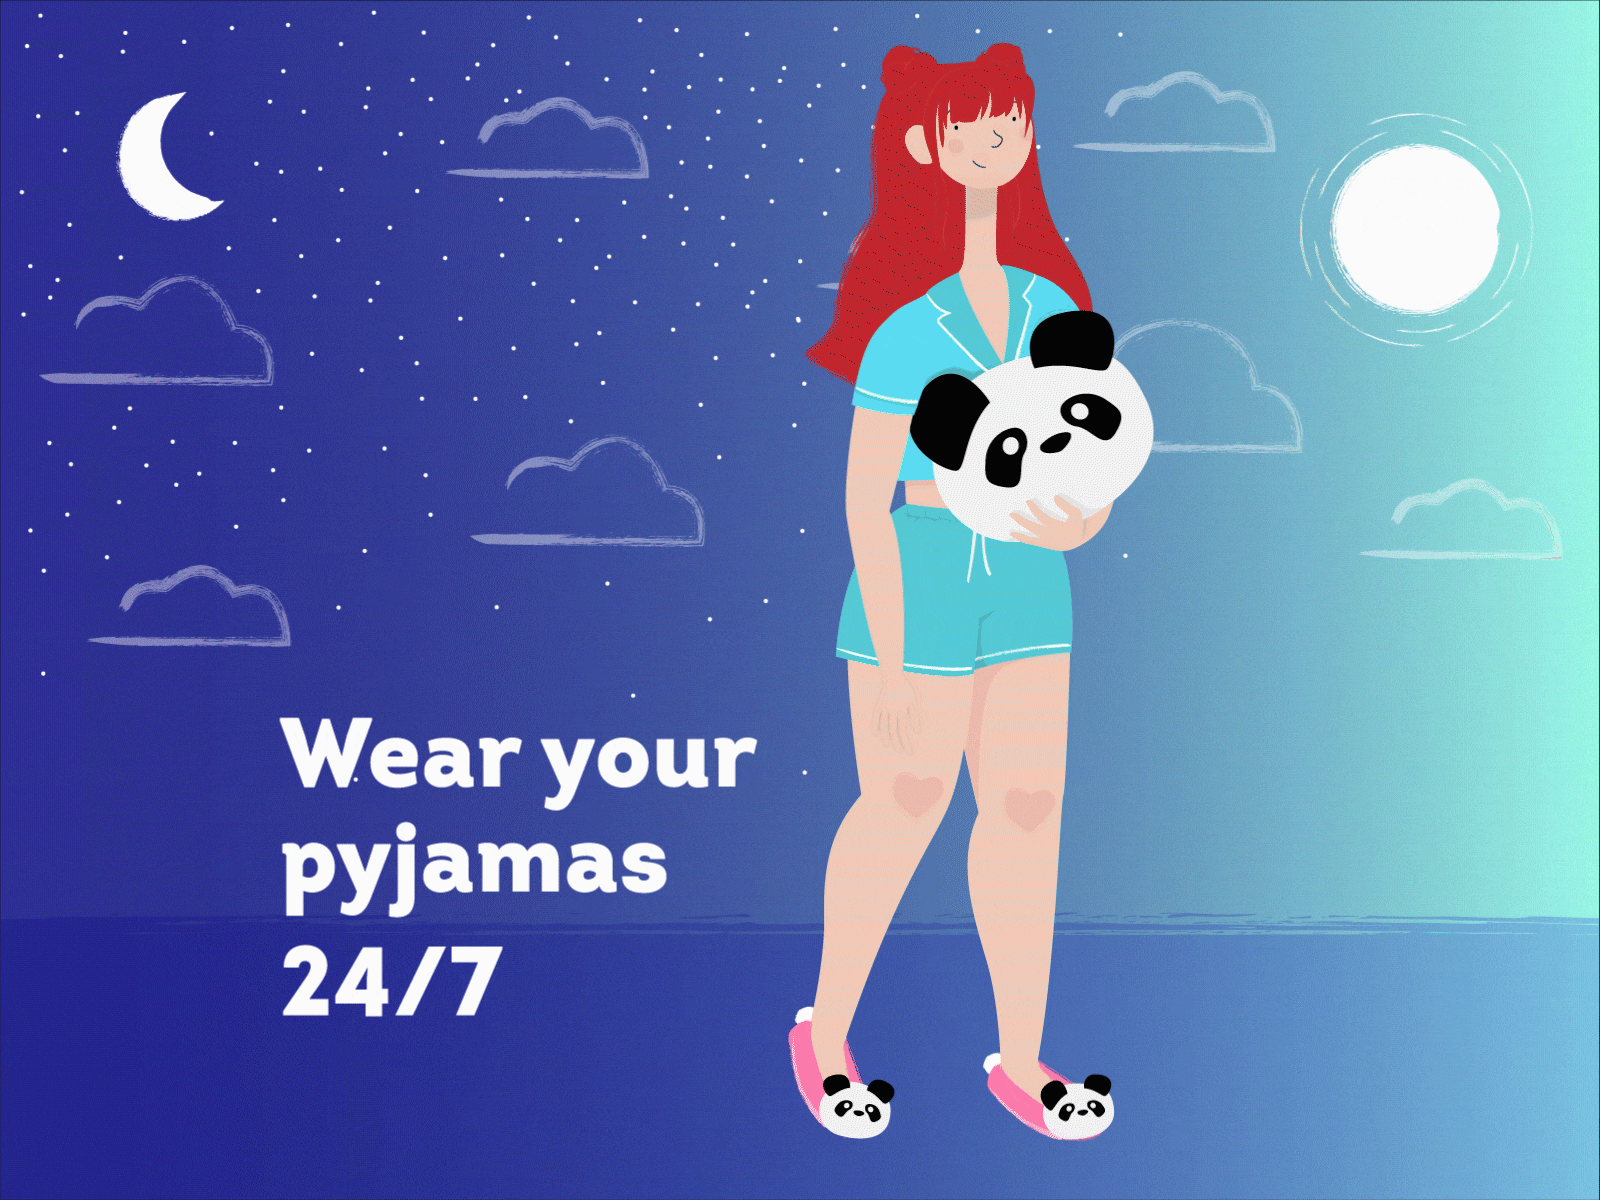 Permanently pyjama-ed